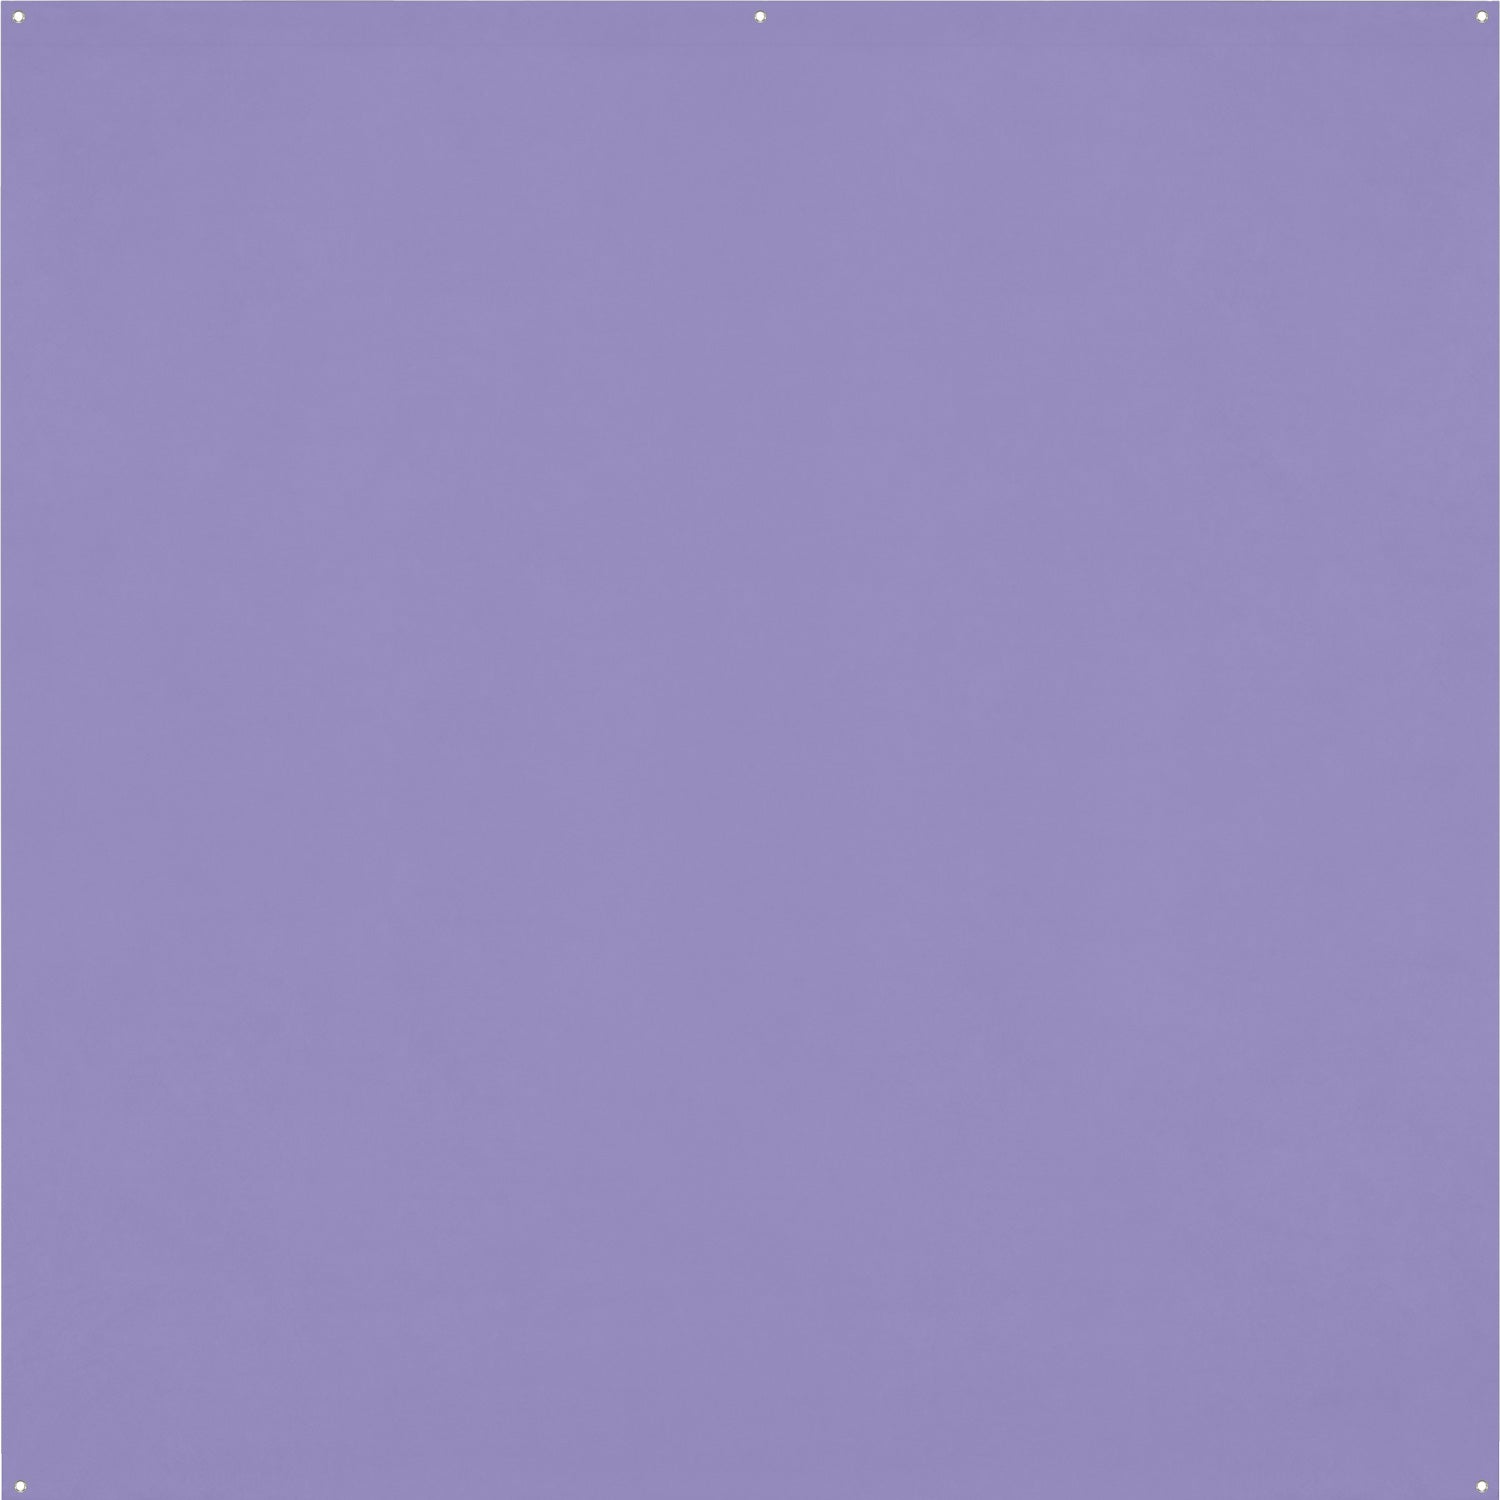 Purple Construction Paper Texture Picture, Free Photograph